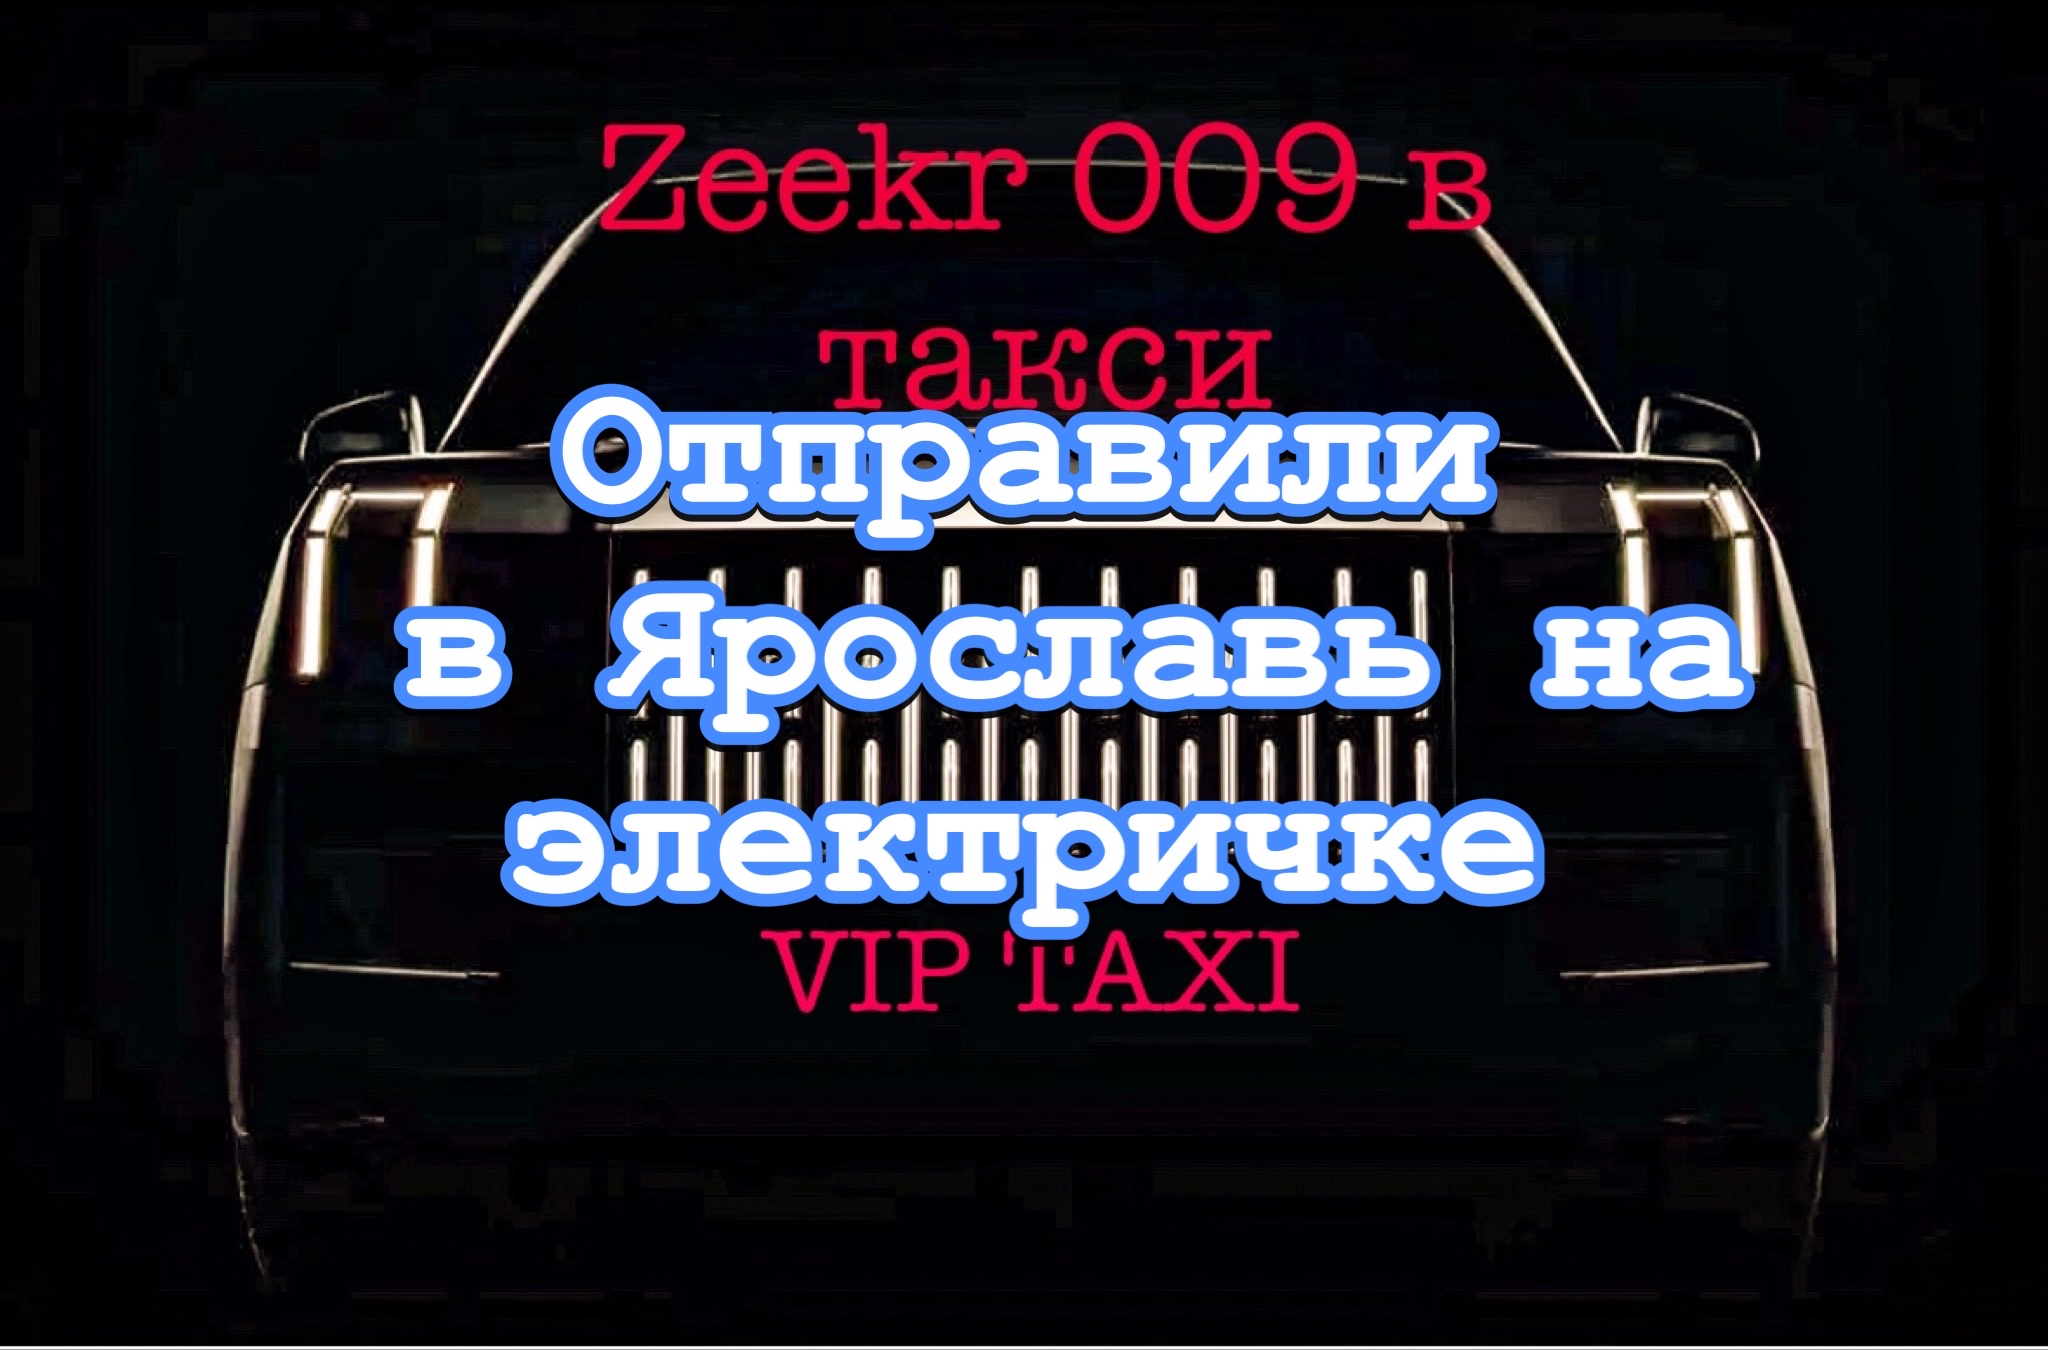 Поездка в Ярославль /таксую на zeekr009/elite taxi/тариф элит/рабочая смена